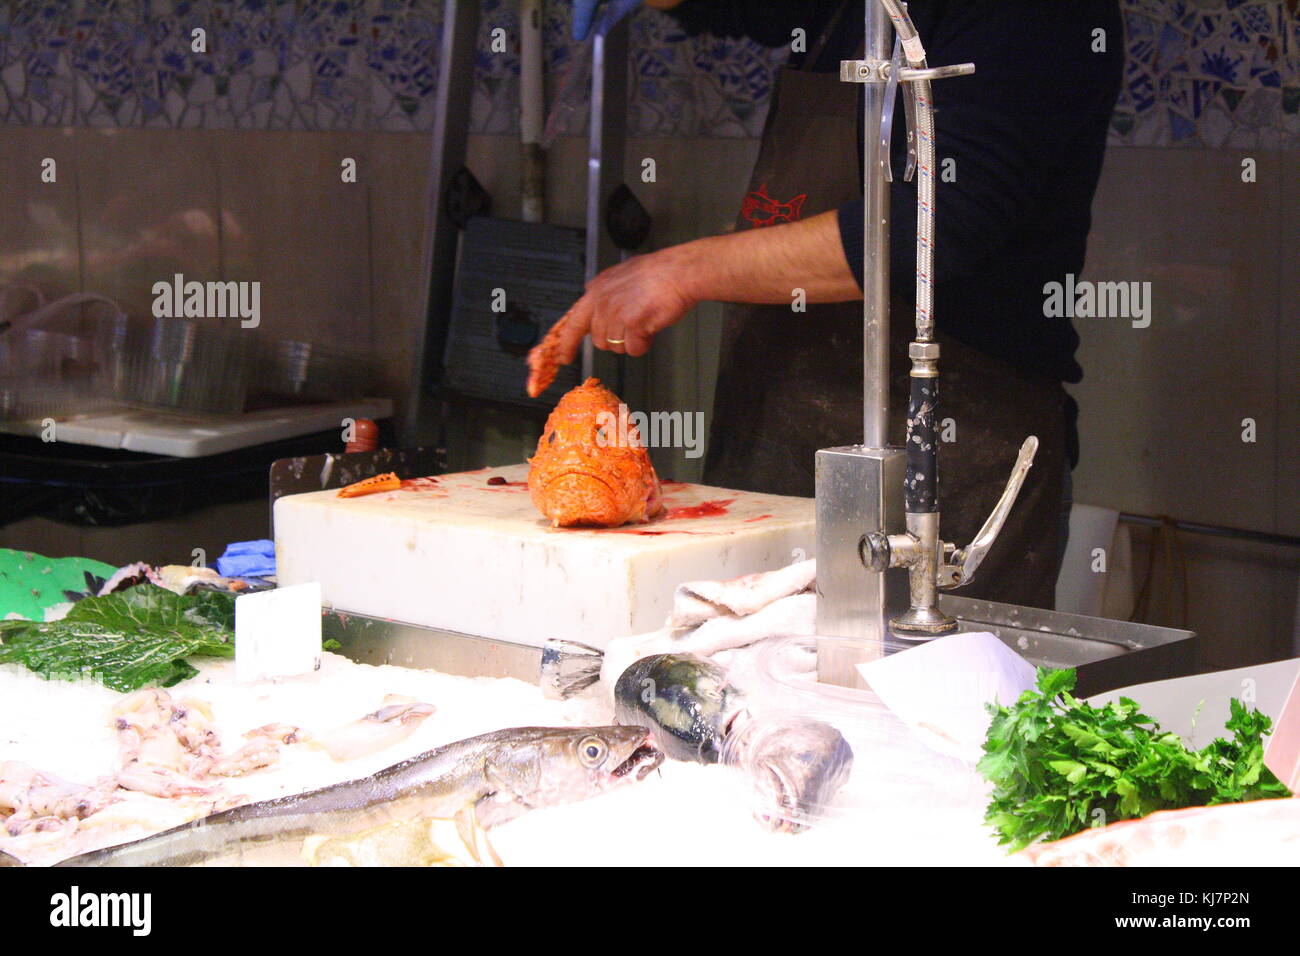 Ein Lebensmittelmarkt Verkäufer schneidet einen frisch gefangenen Fisch zum Essen zu verkaufen. Stockfoto